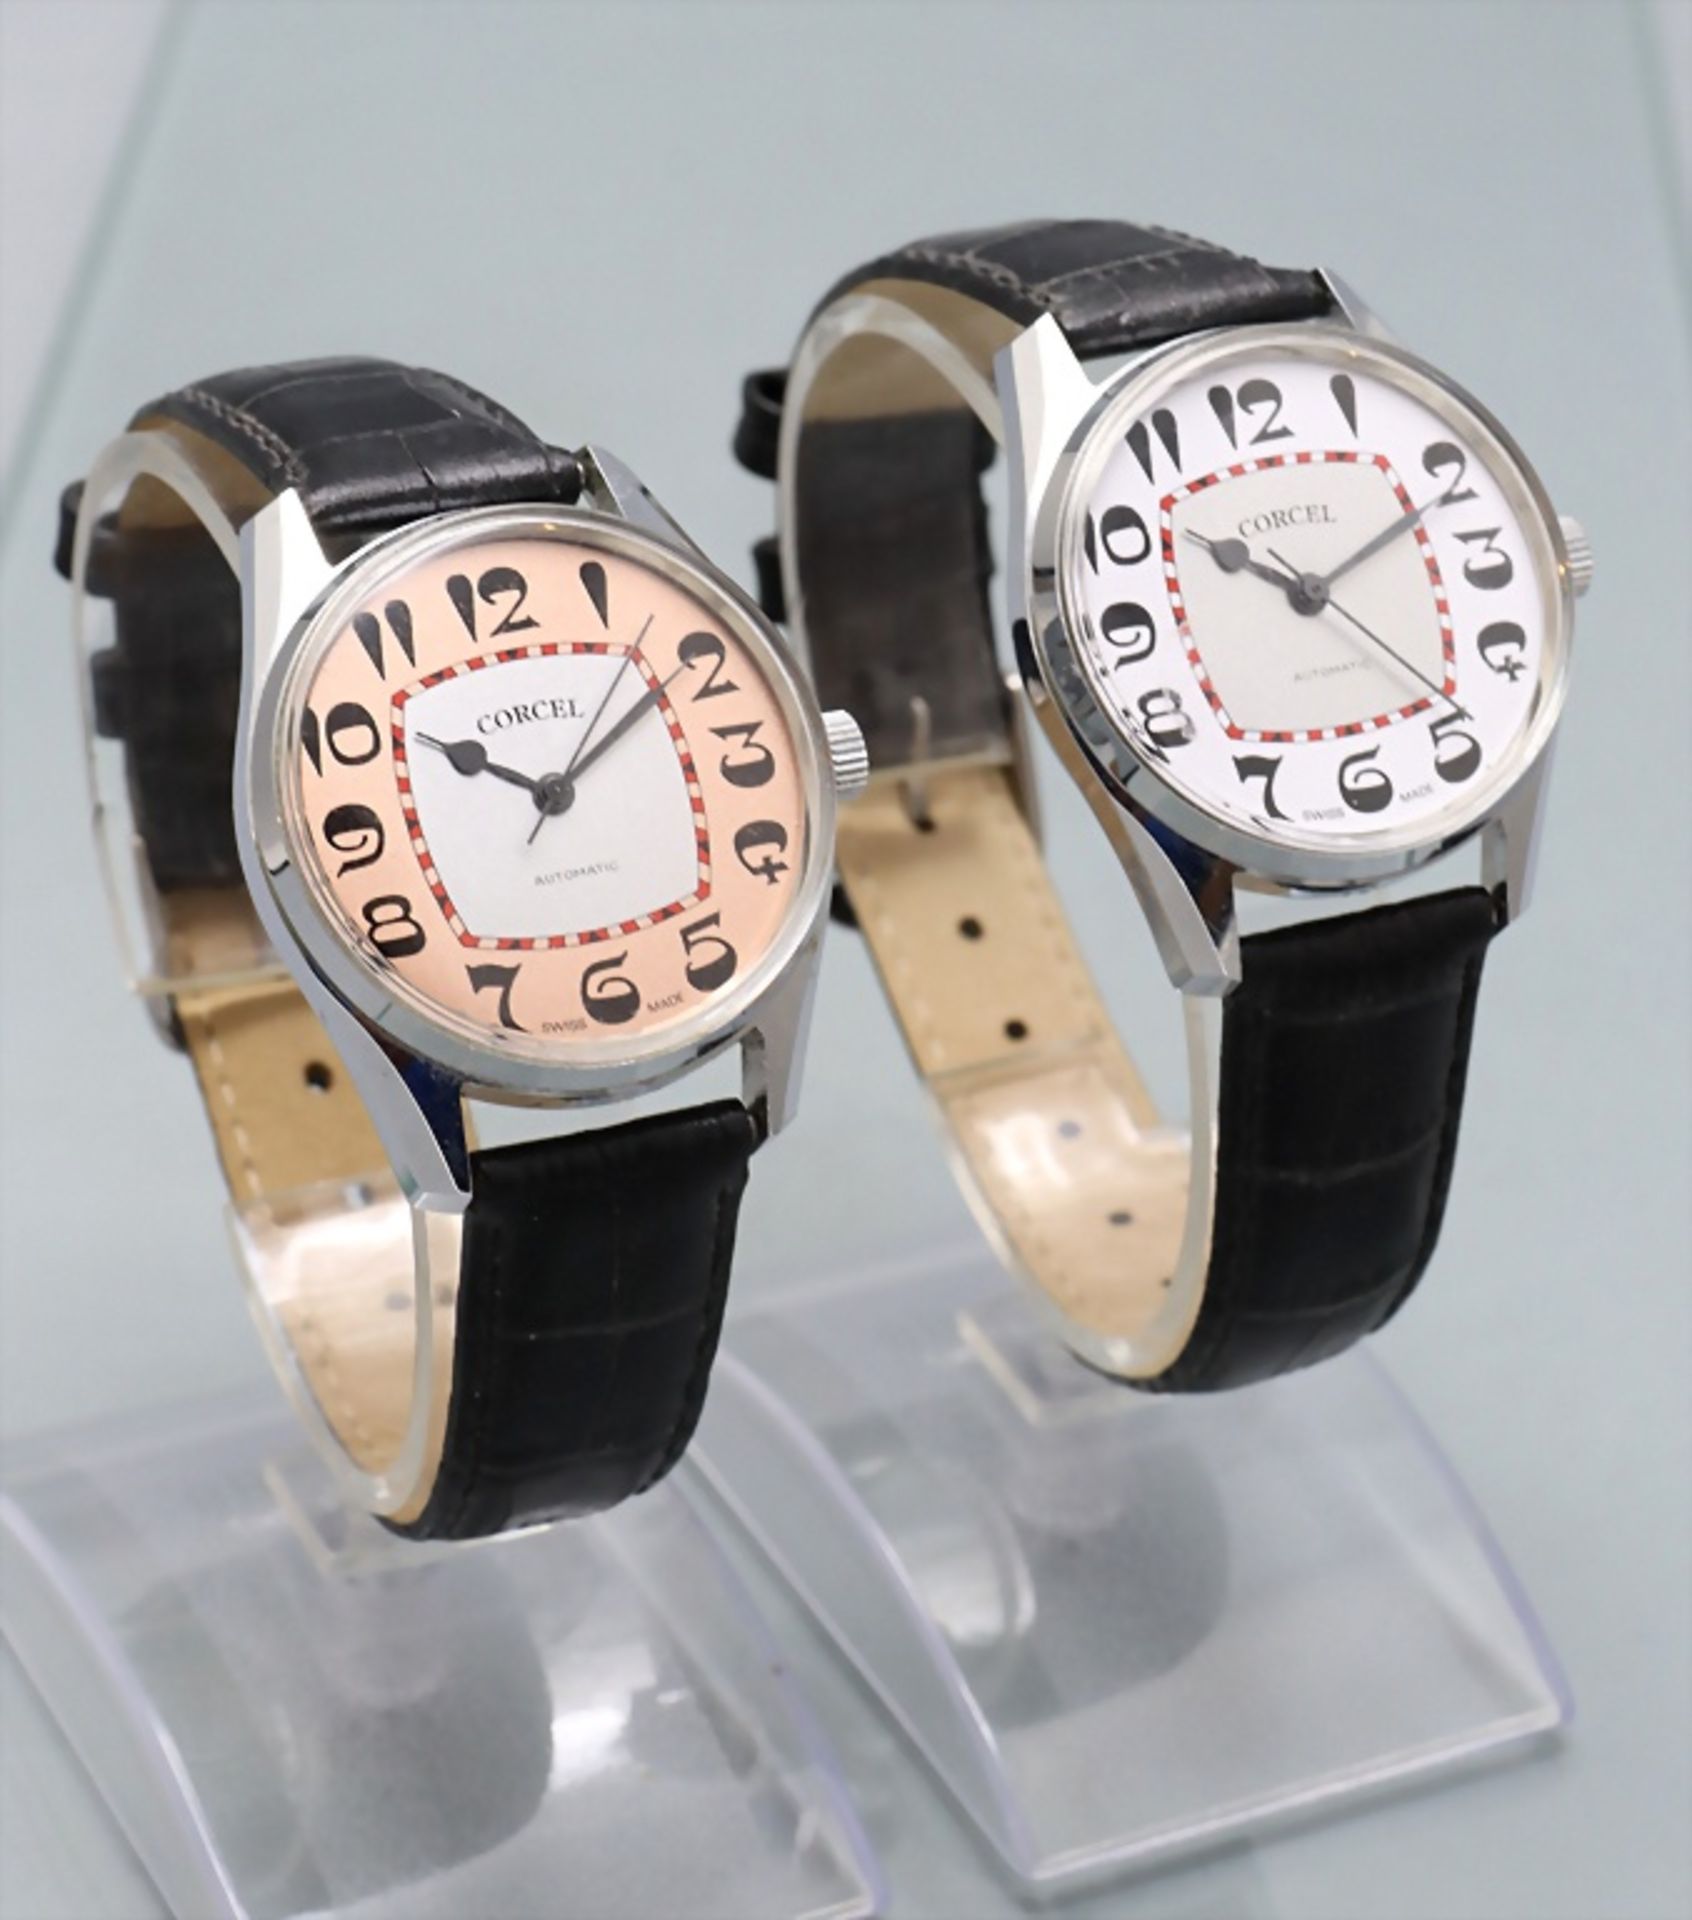 Zwei Herrenarmbanduhren / Two men's wristwatches, Corcel - Bild 2 aus 7